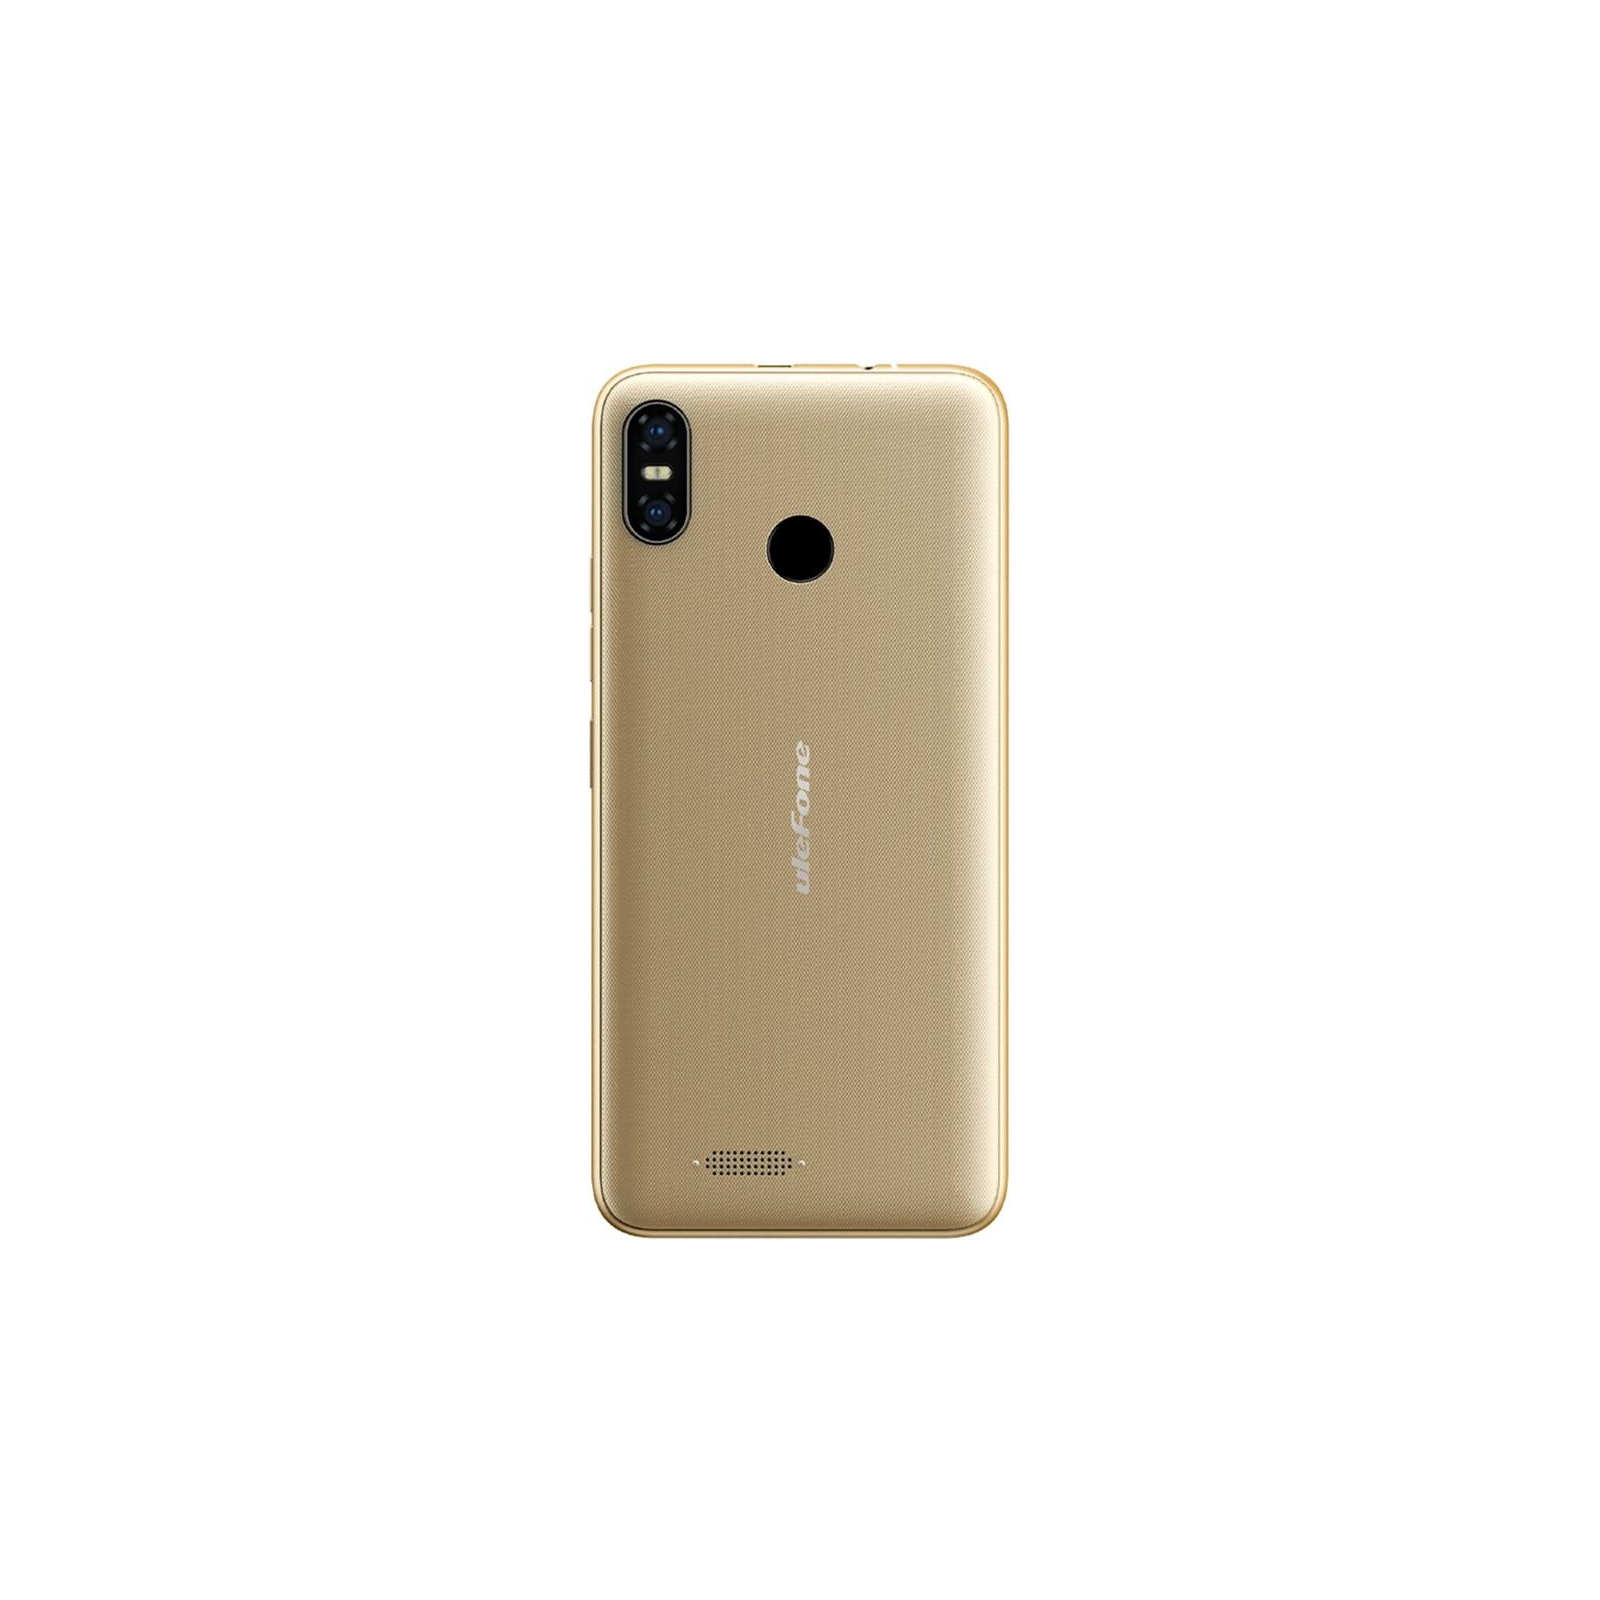 Мобильный телефон Ulefone S9 Pro 2/16Gb Gold (6937748732495) изображение 2